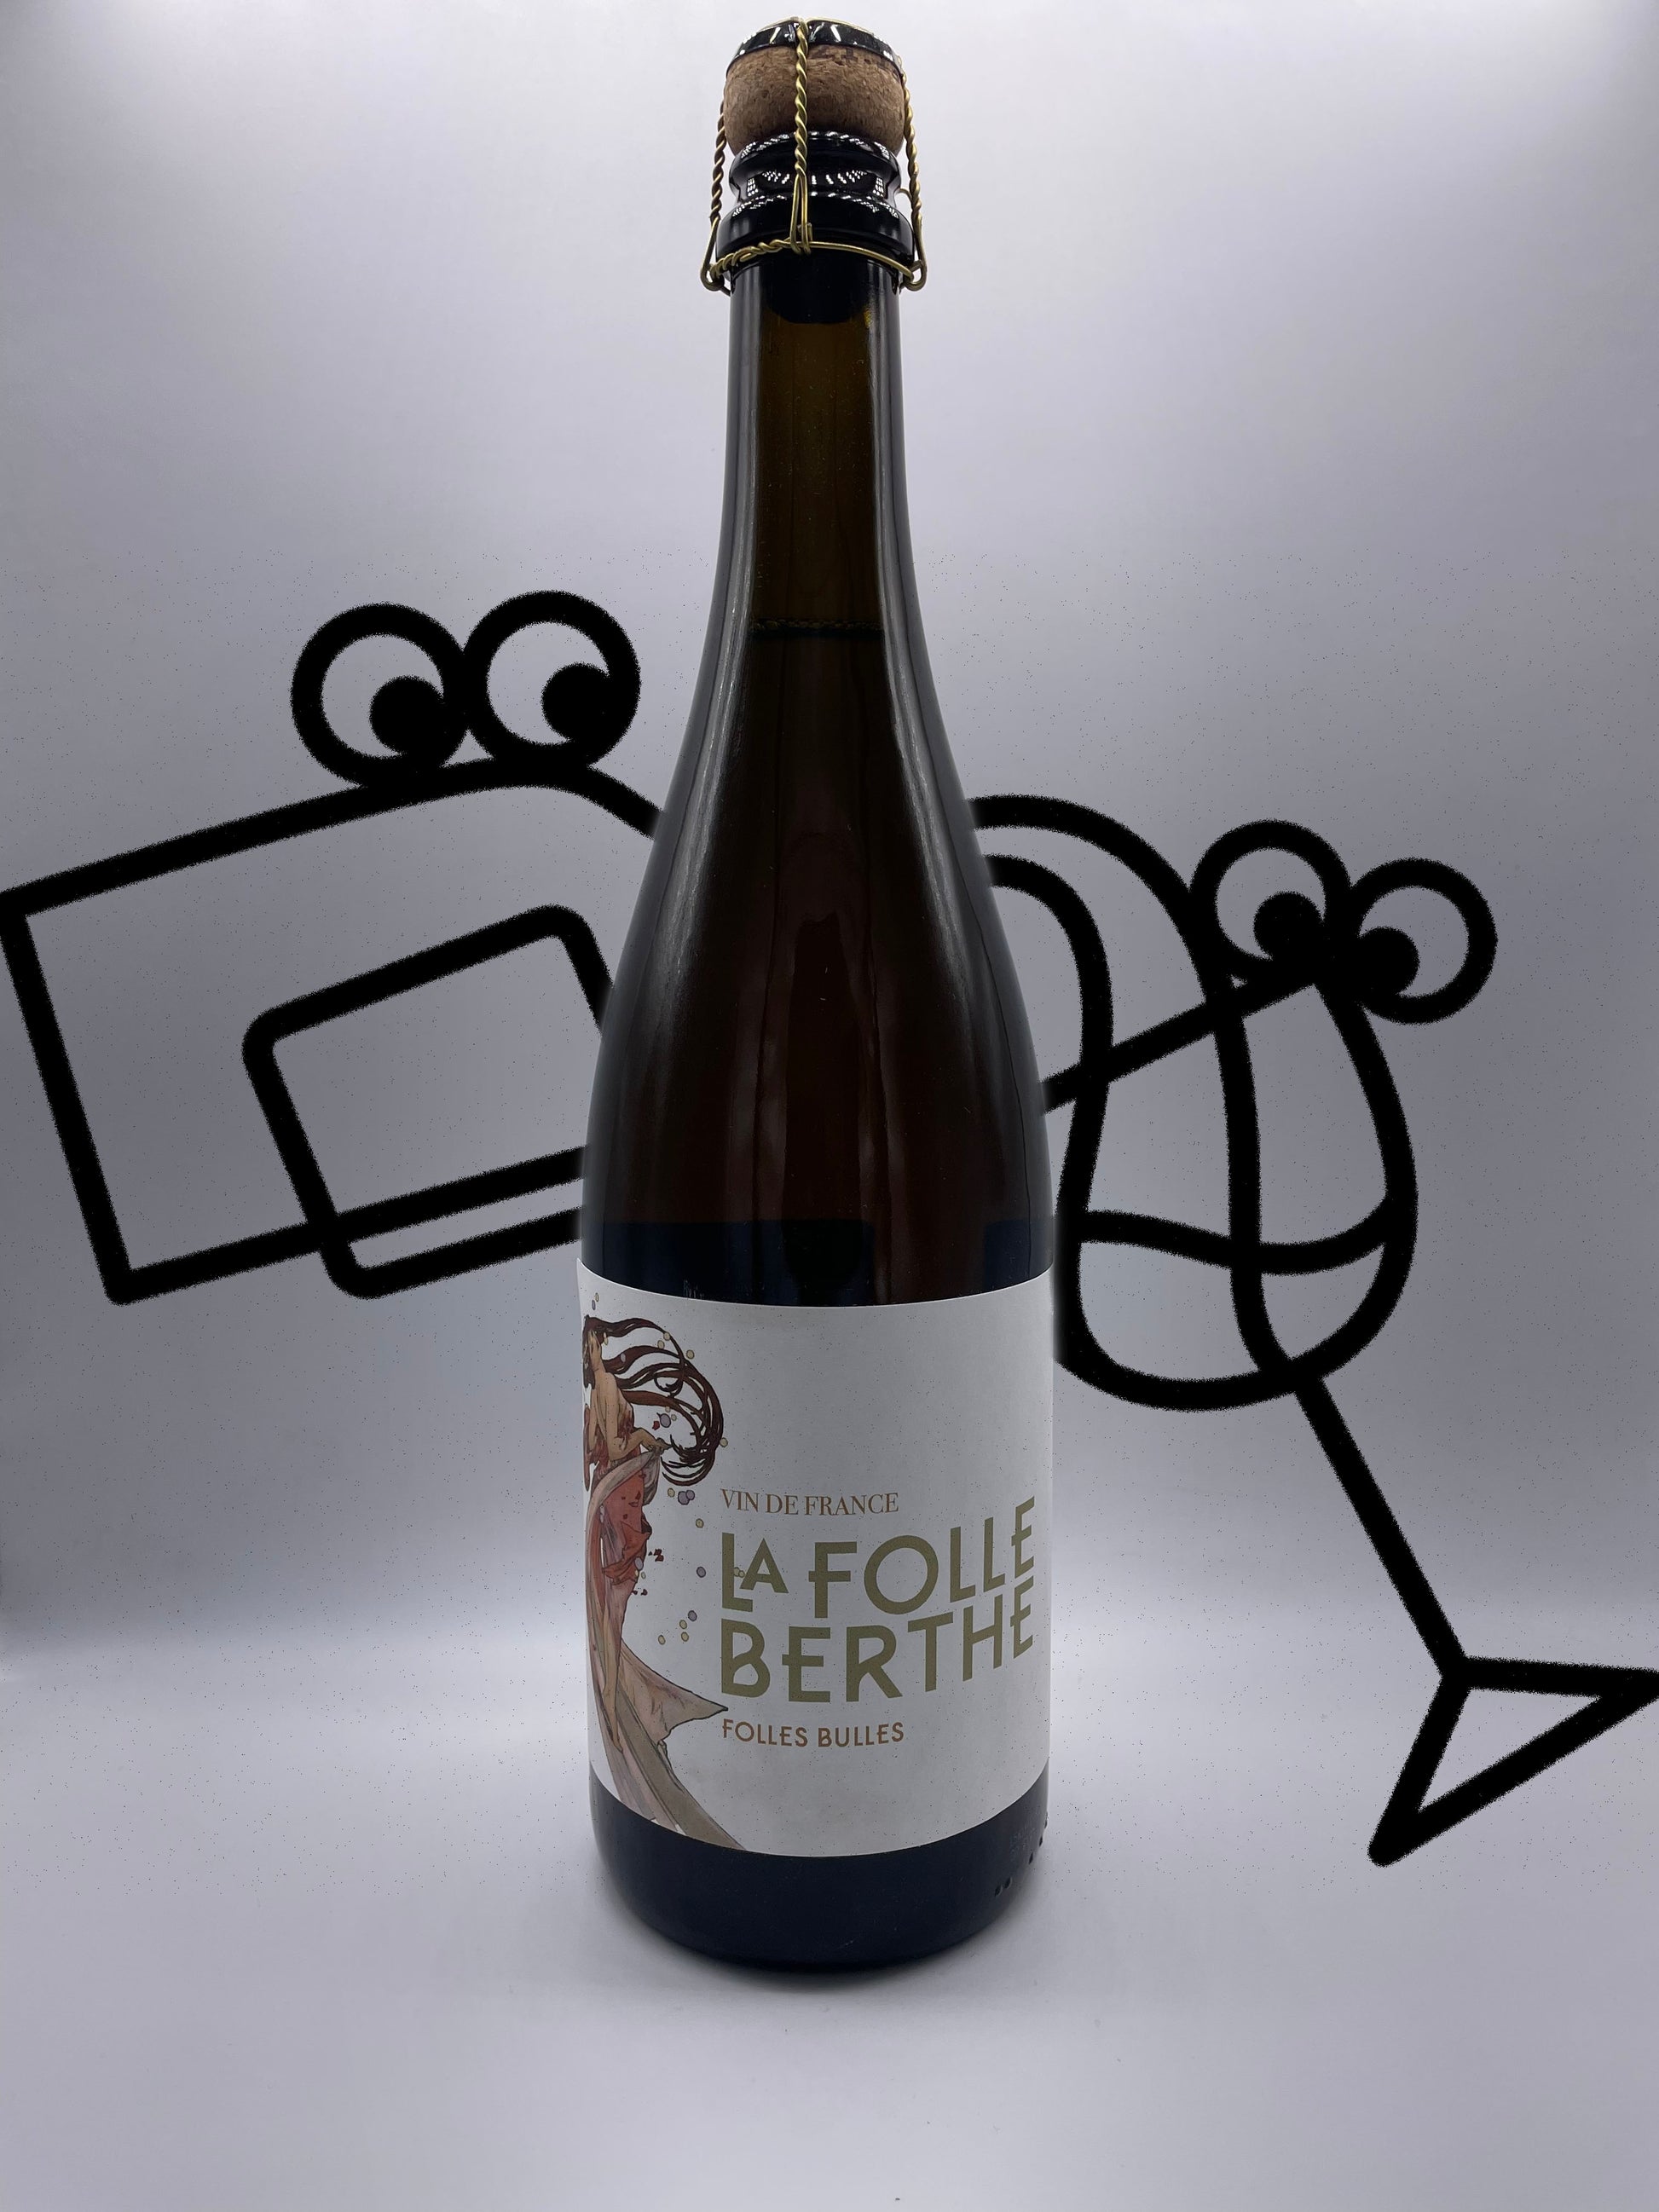 La Folle Berthe 'Les Folles Bulles' NV Loire Valley, France Williston Park Wines